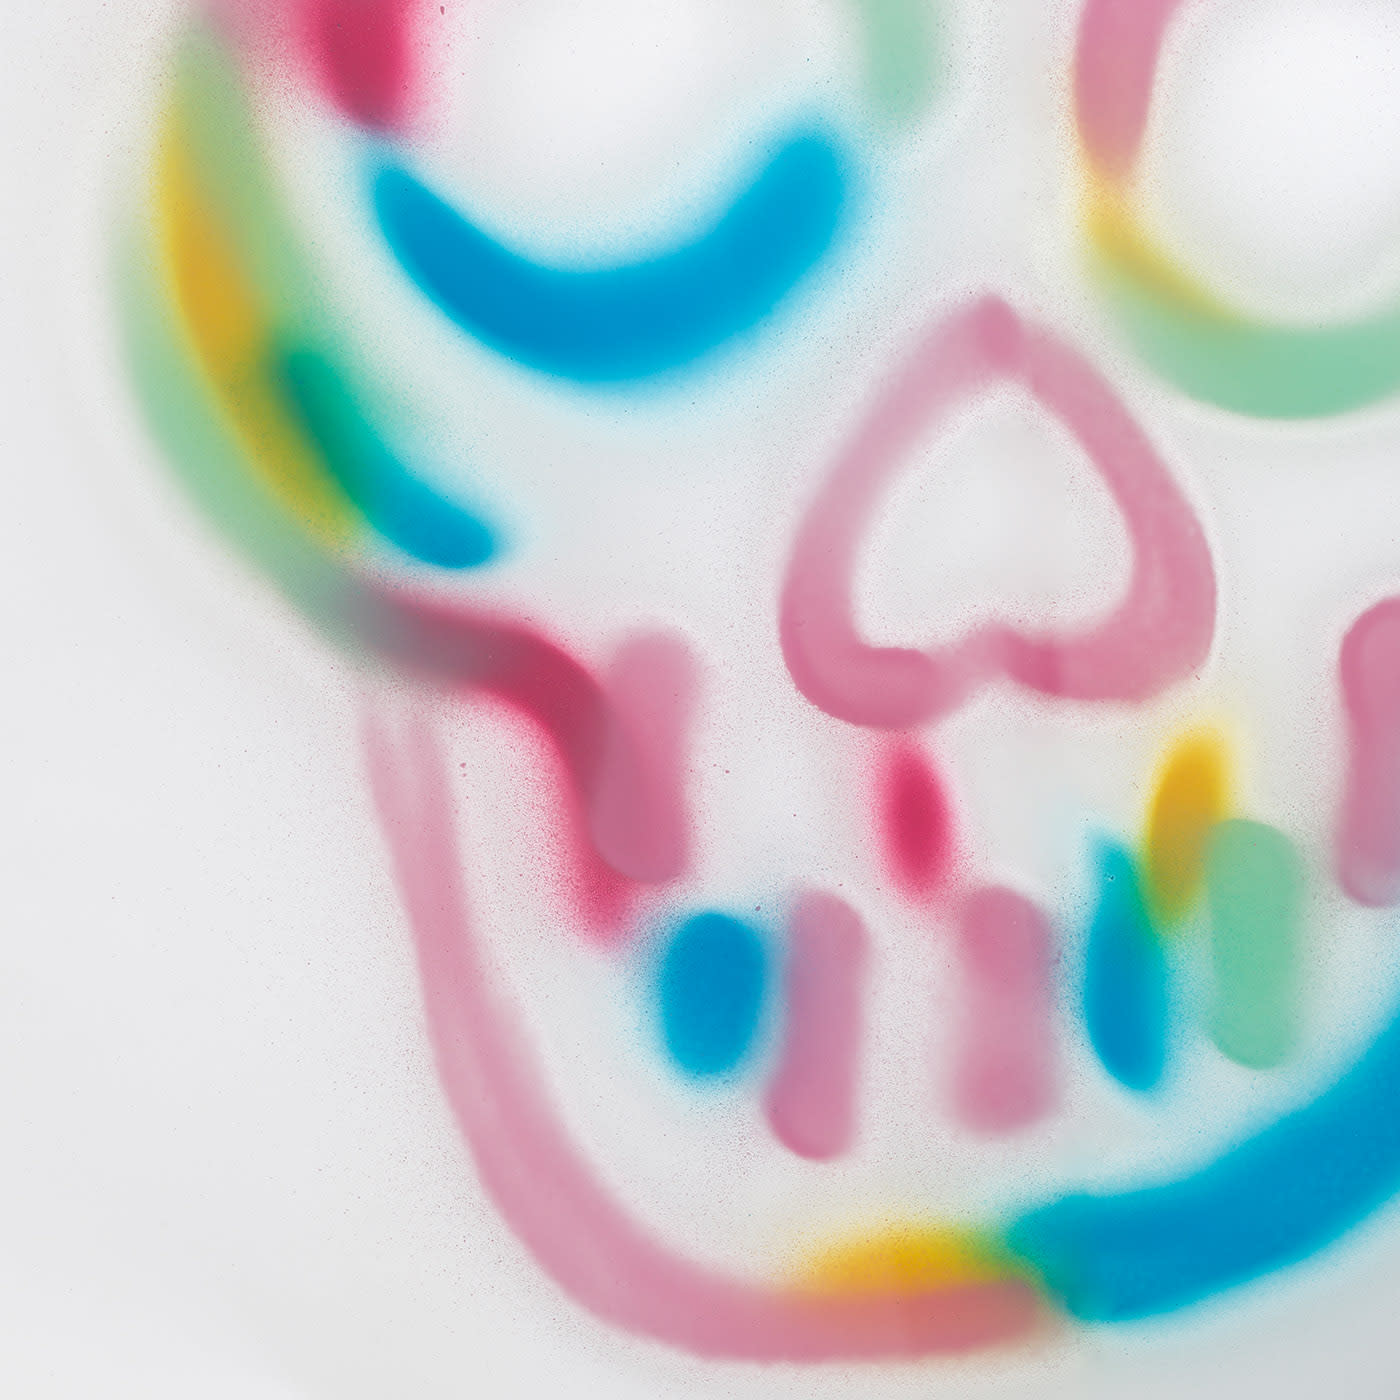 Fun Skull of Colors Mirror #2 by Bradley Theodore - Covi e Puccioni